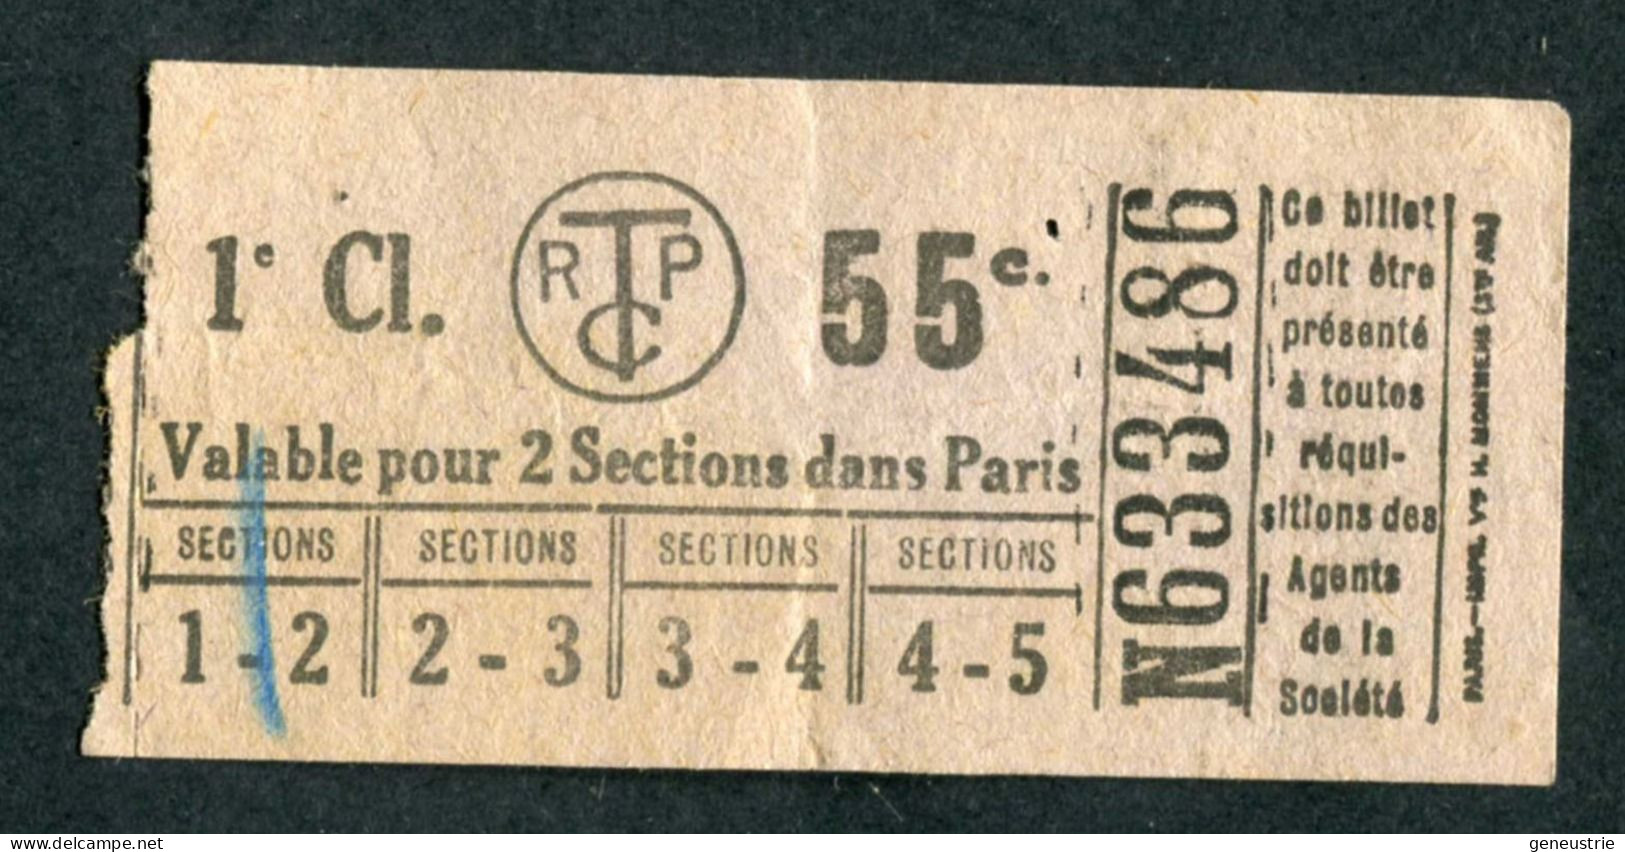 Ticket De Tramways Parisiens 1921 à 1938 (STCRP) 1e Classe 55c - Paris" Tramway - Tram - Europe